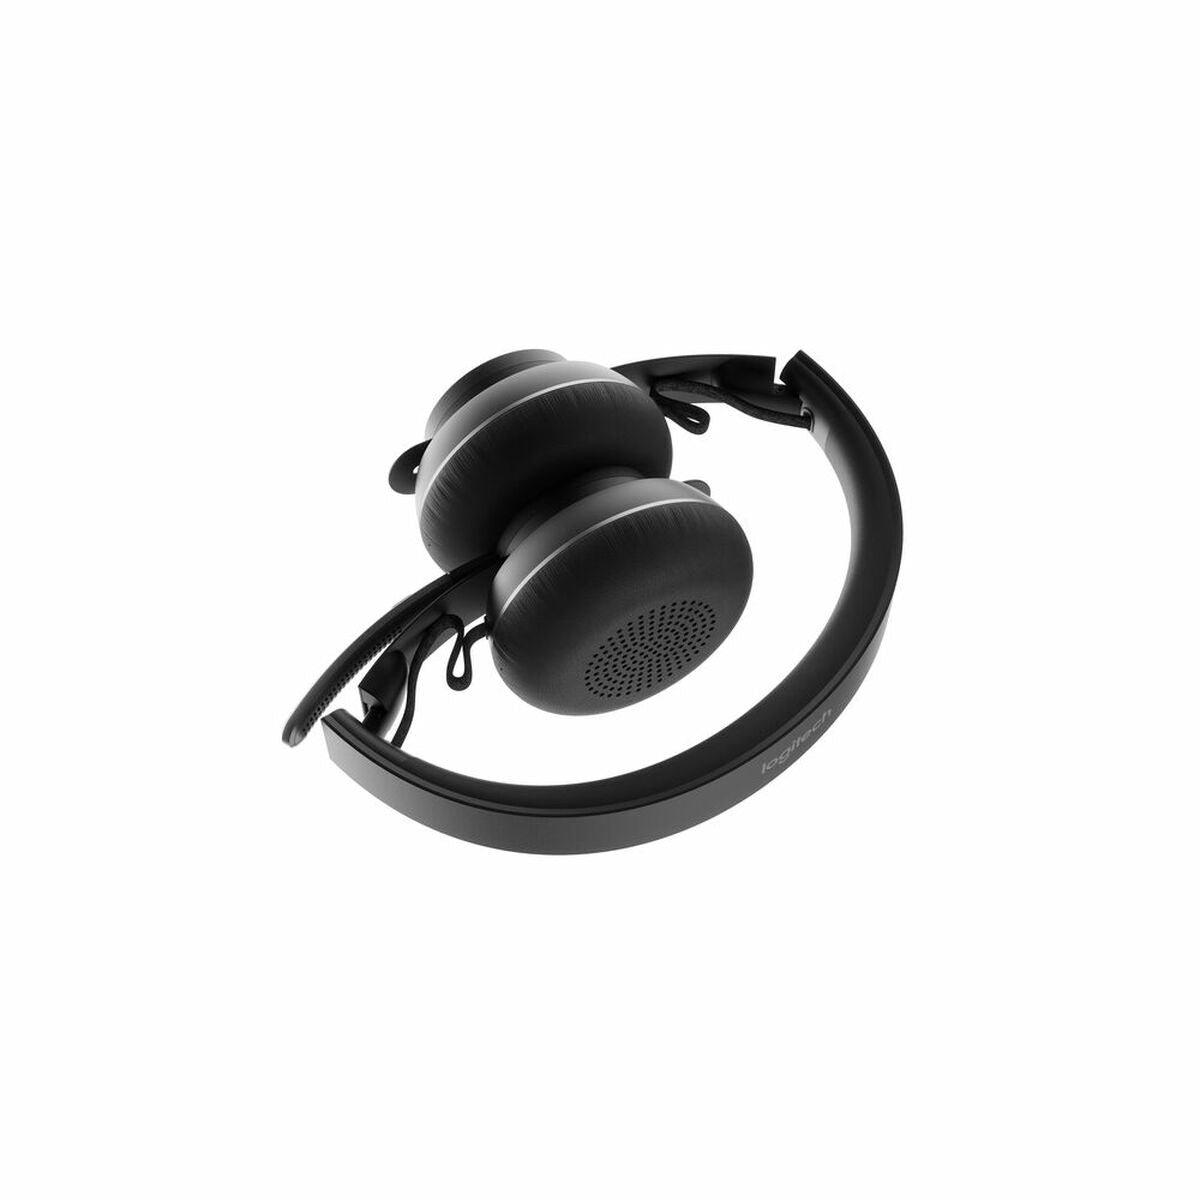 Casques Bluetooth avec Microphone Logitech 981-000914 Noir Graphite